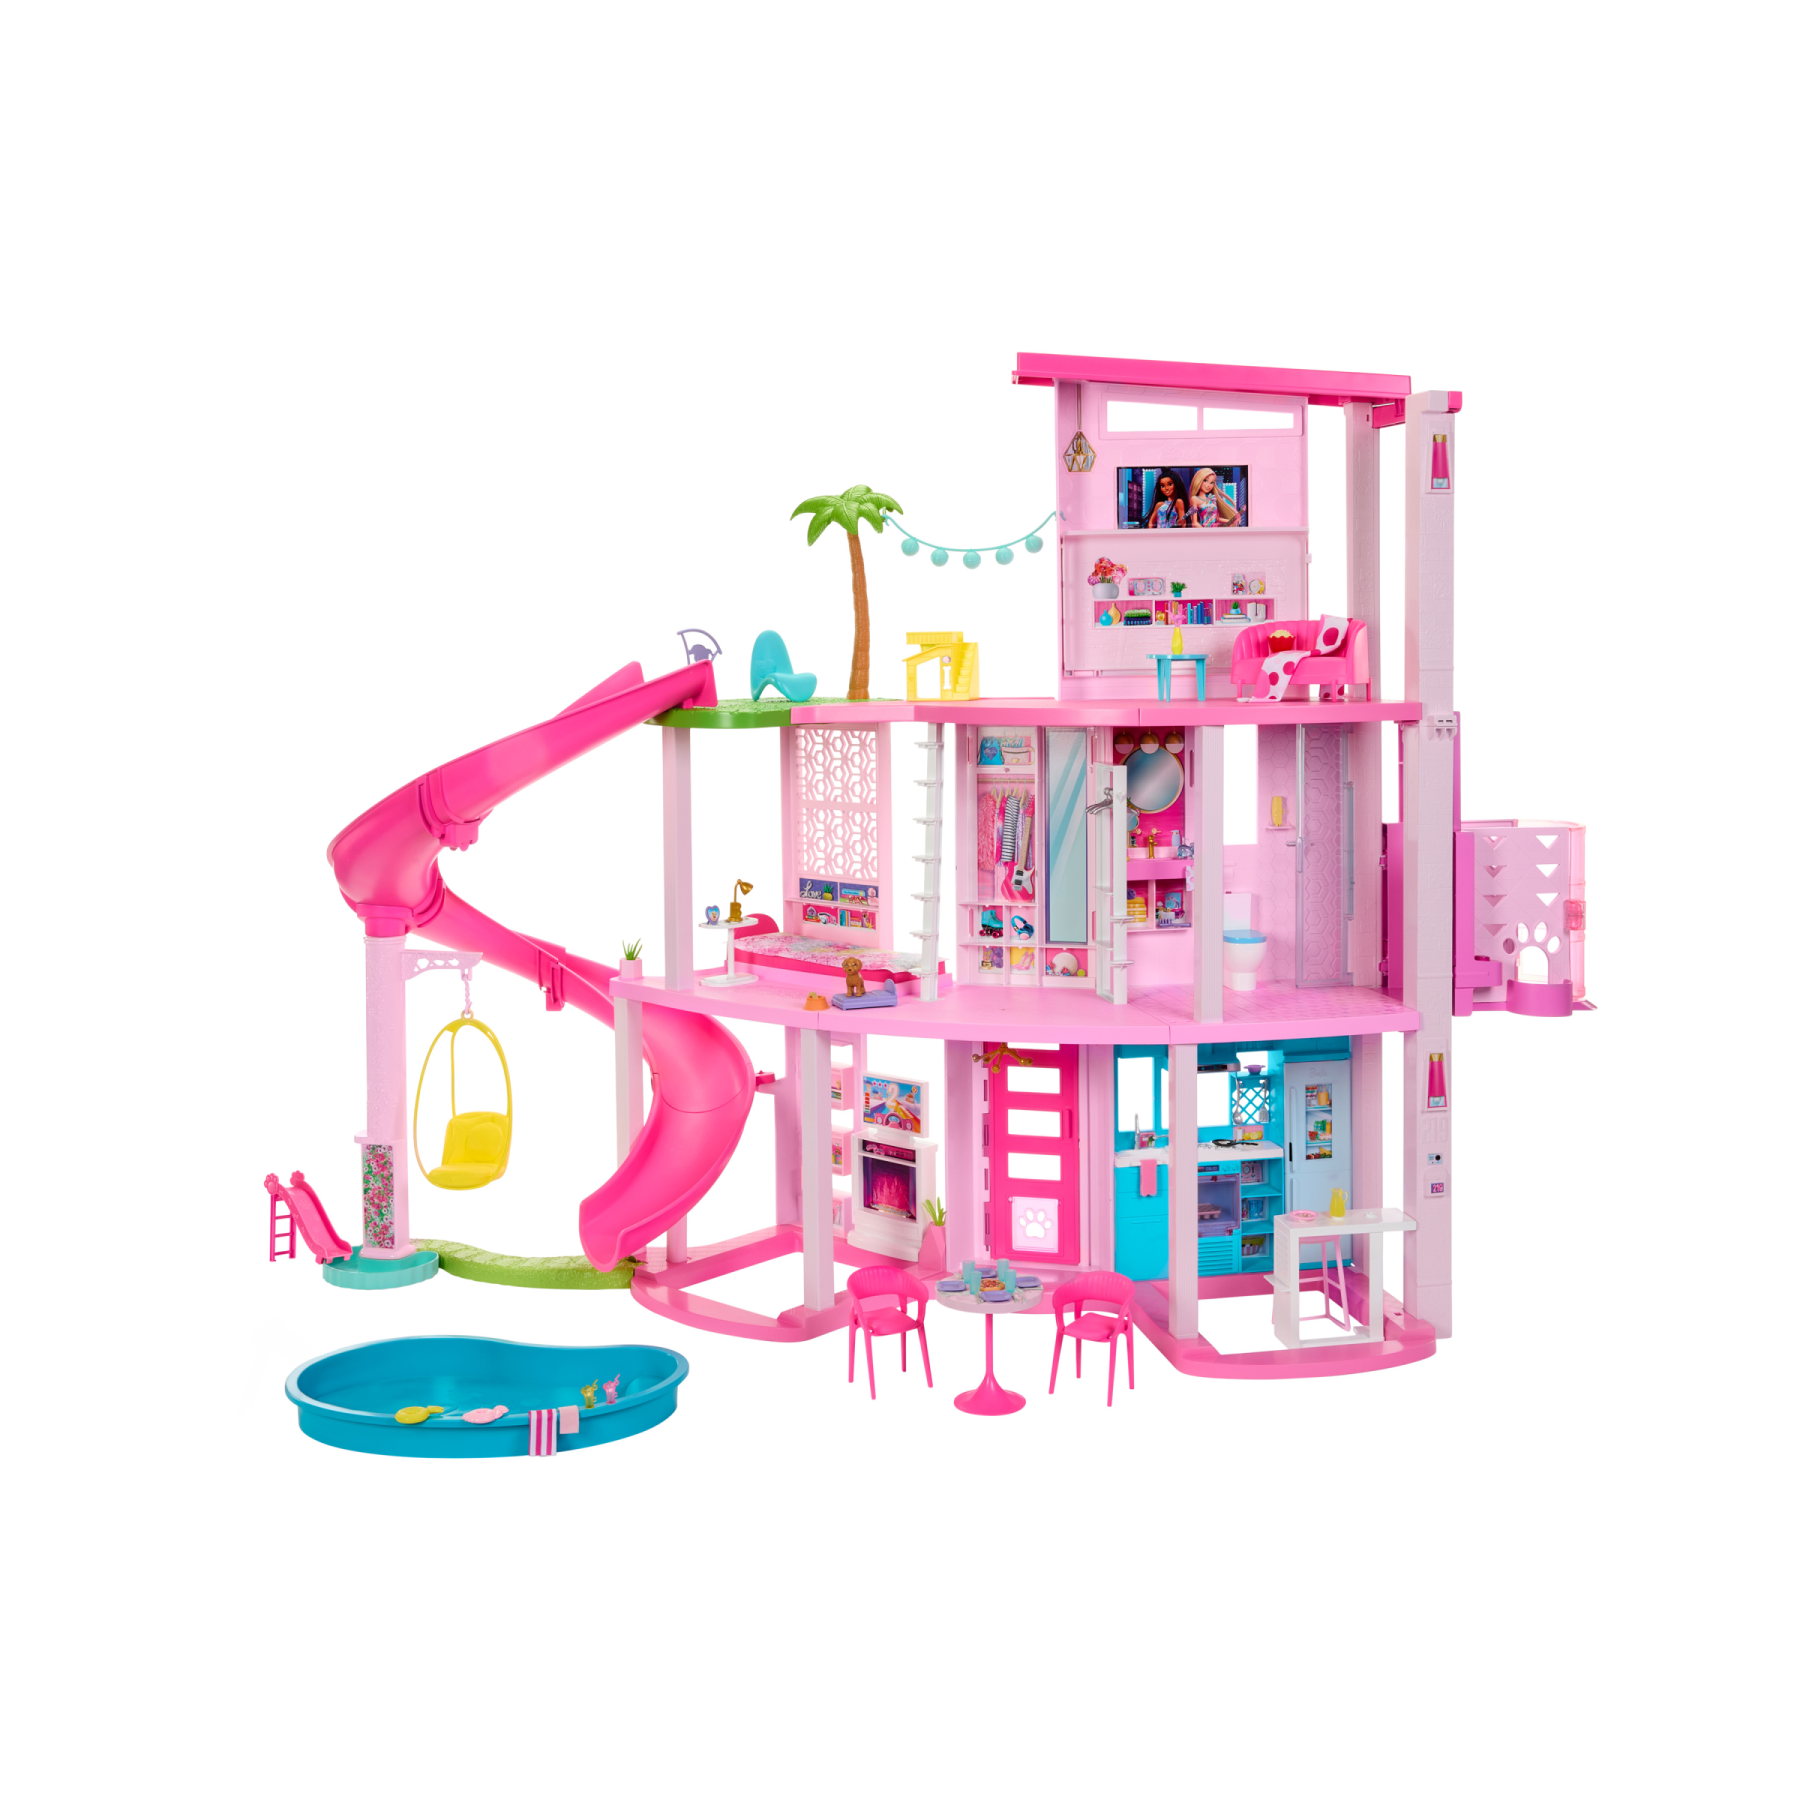 Barbie - casa dei sogni di barbie, playset casa delle bambole con piscina, scivolo a 3 piani, ascensore e aree di gioco per cuccioli, 75+ accessori, 3+ anni, hmx10 - Barbie